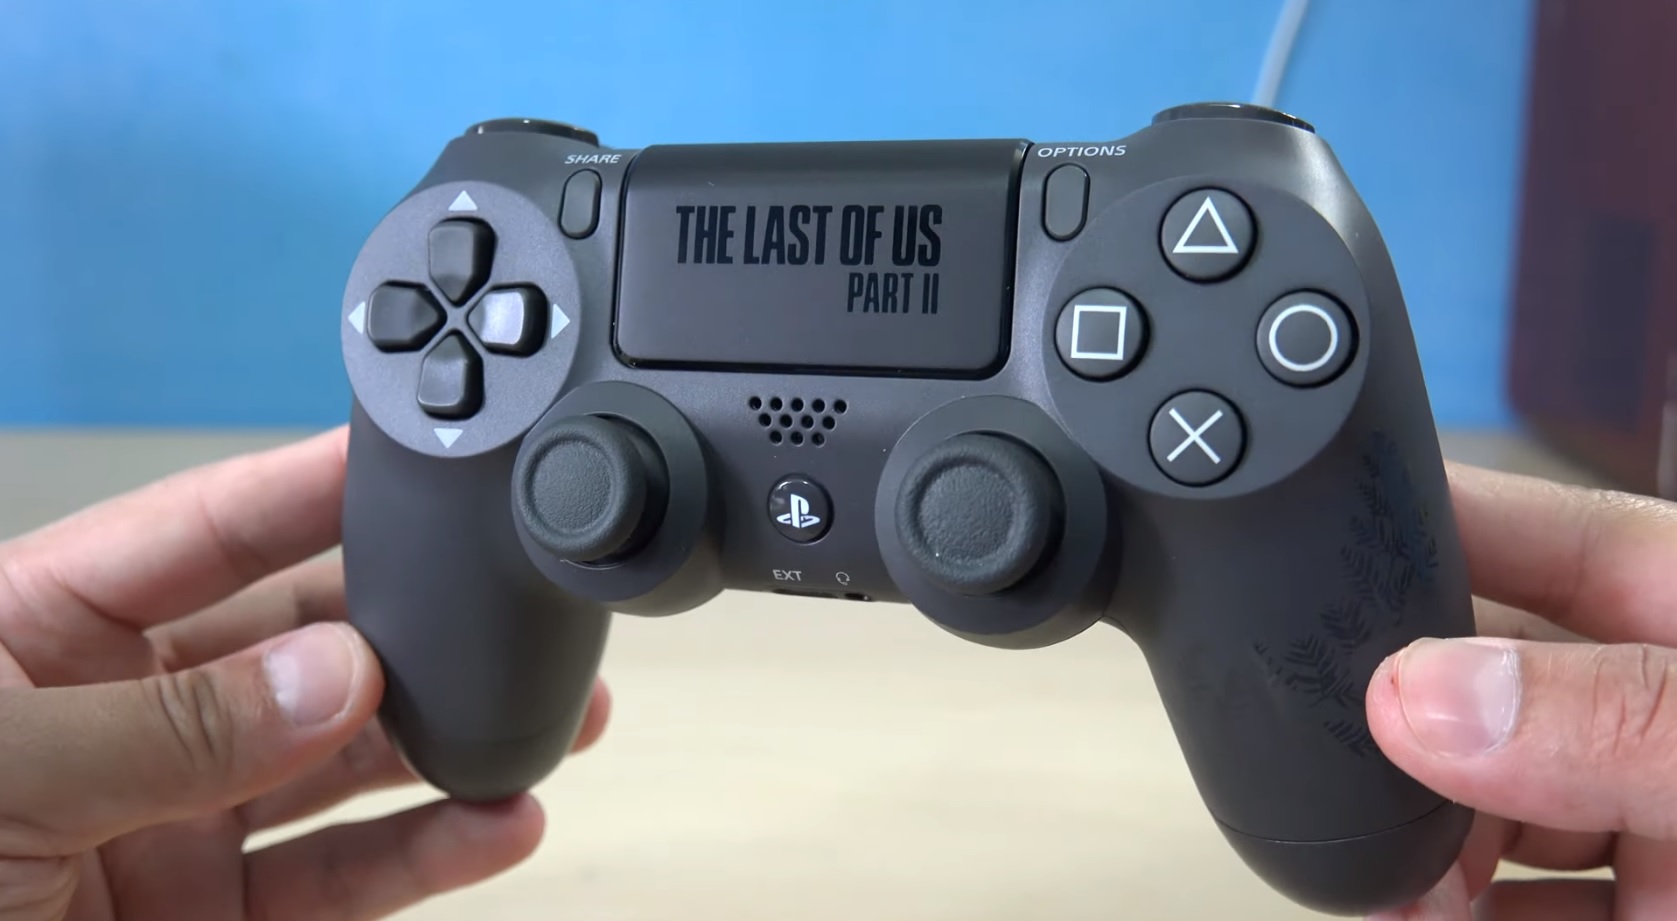 The Last of Us Part II PS4 sur Playstation 4 - Jeux vidéo